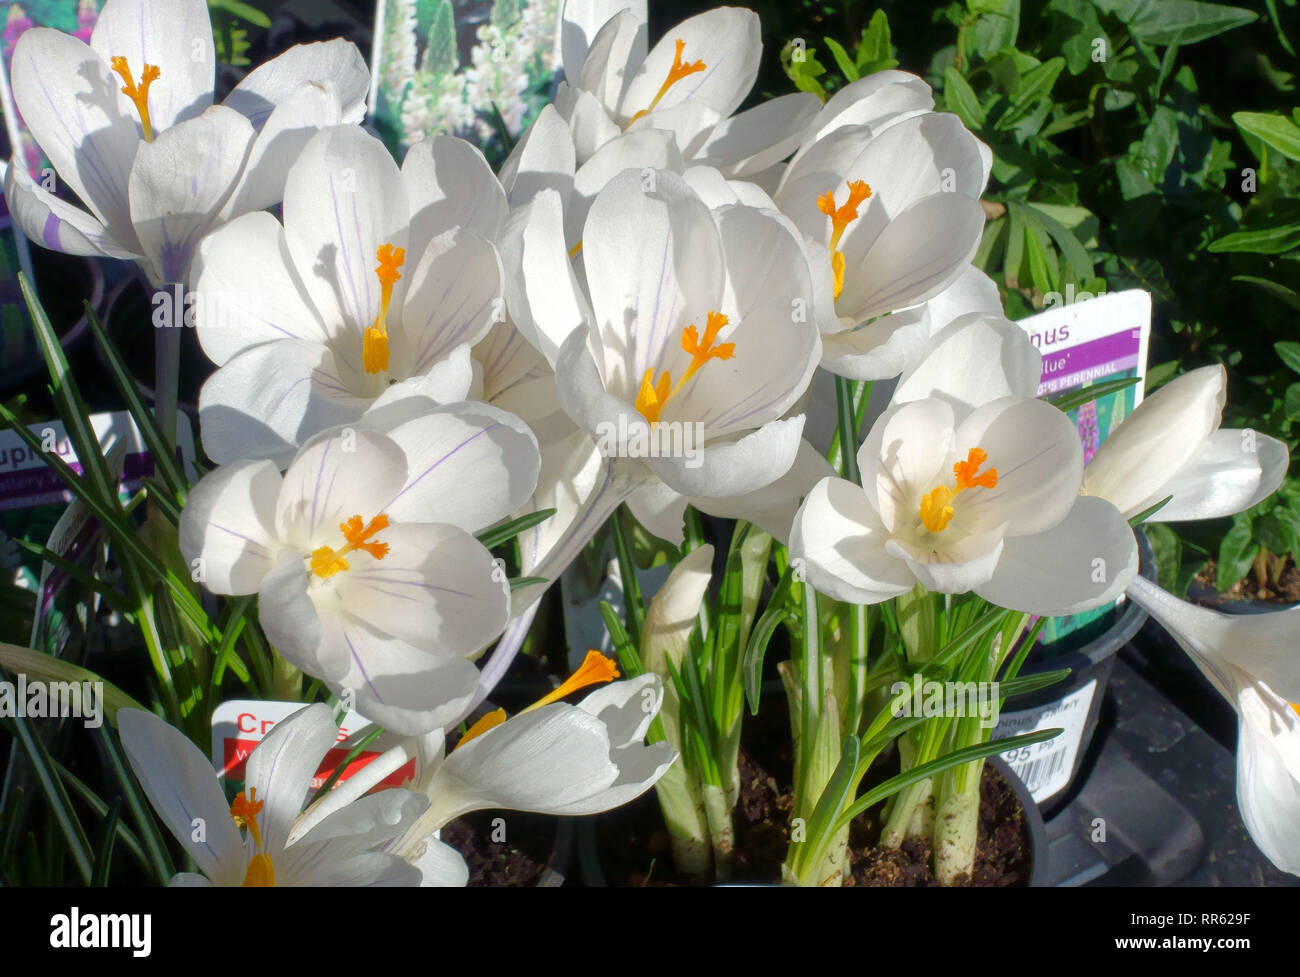 Flowering crocus bulbs on sale in London garden centre Stock Photo